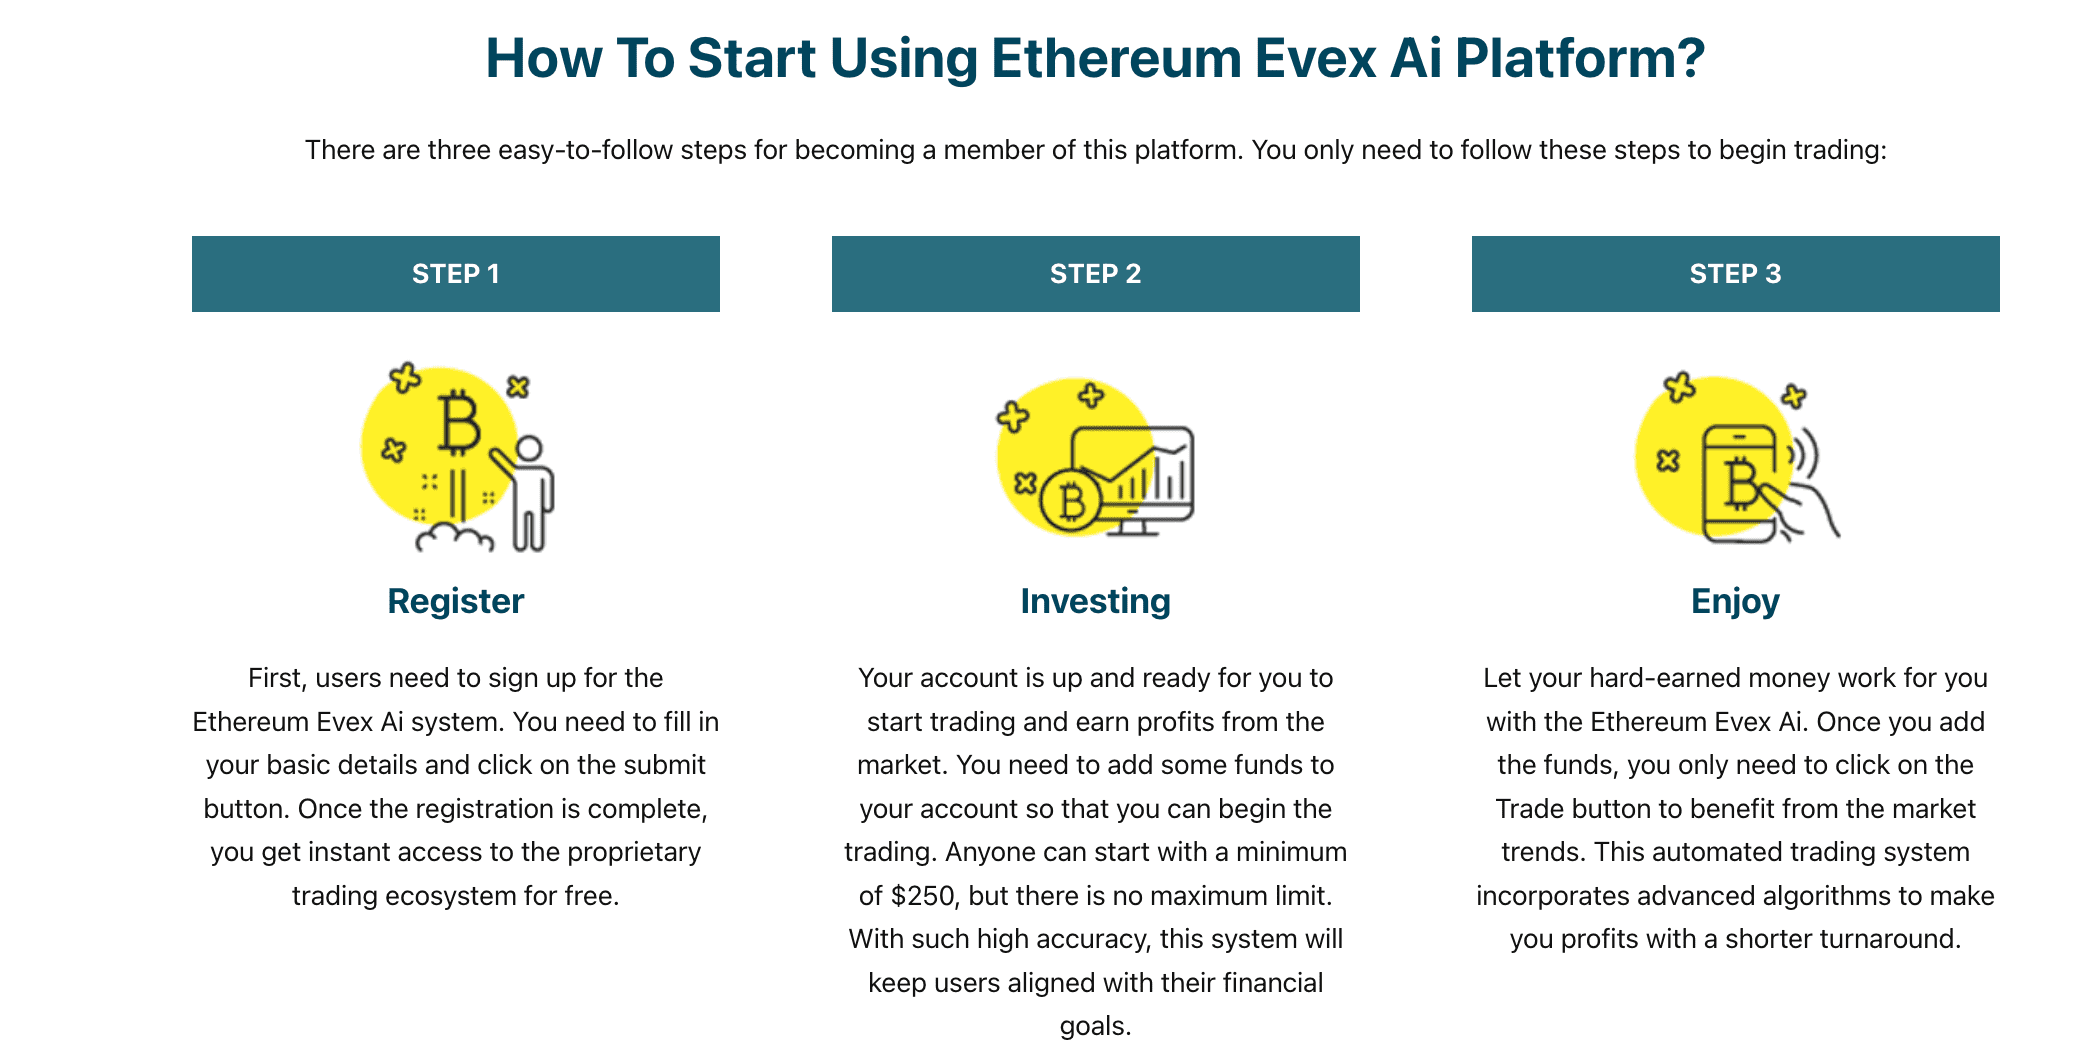 Hoe begin je met het gebruik van Ethereum Evex Ai -platform?  